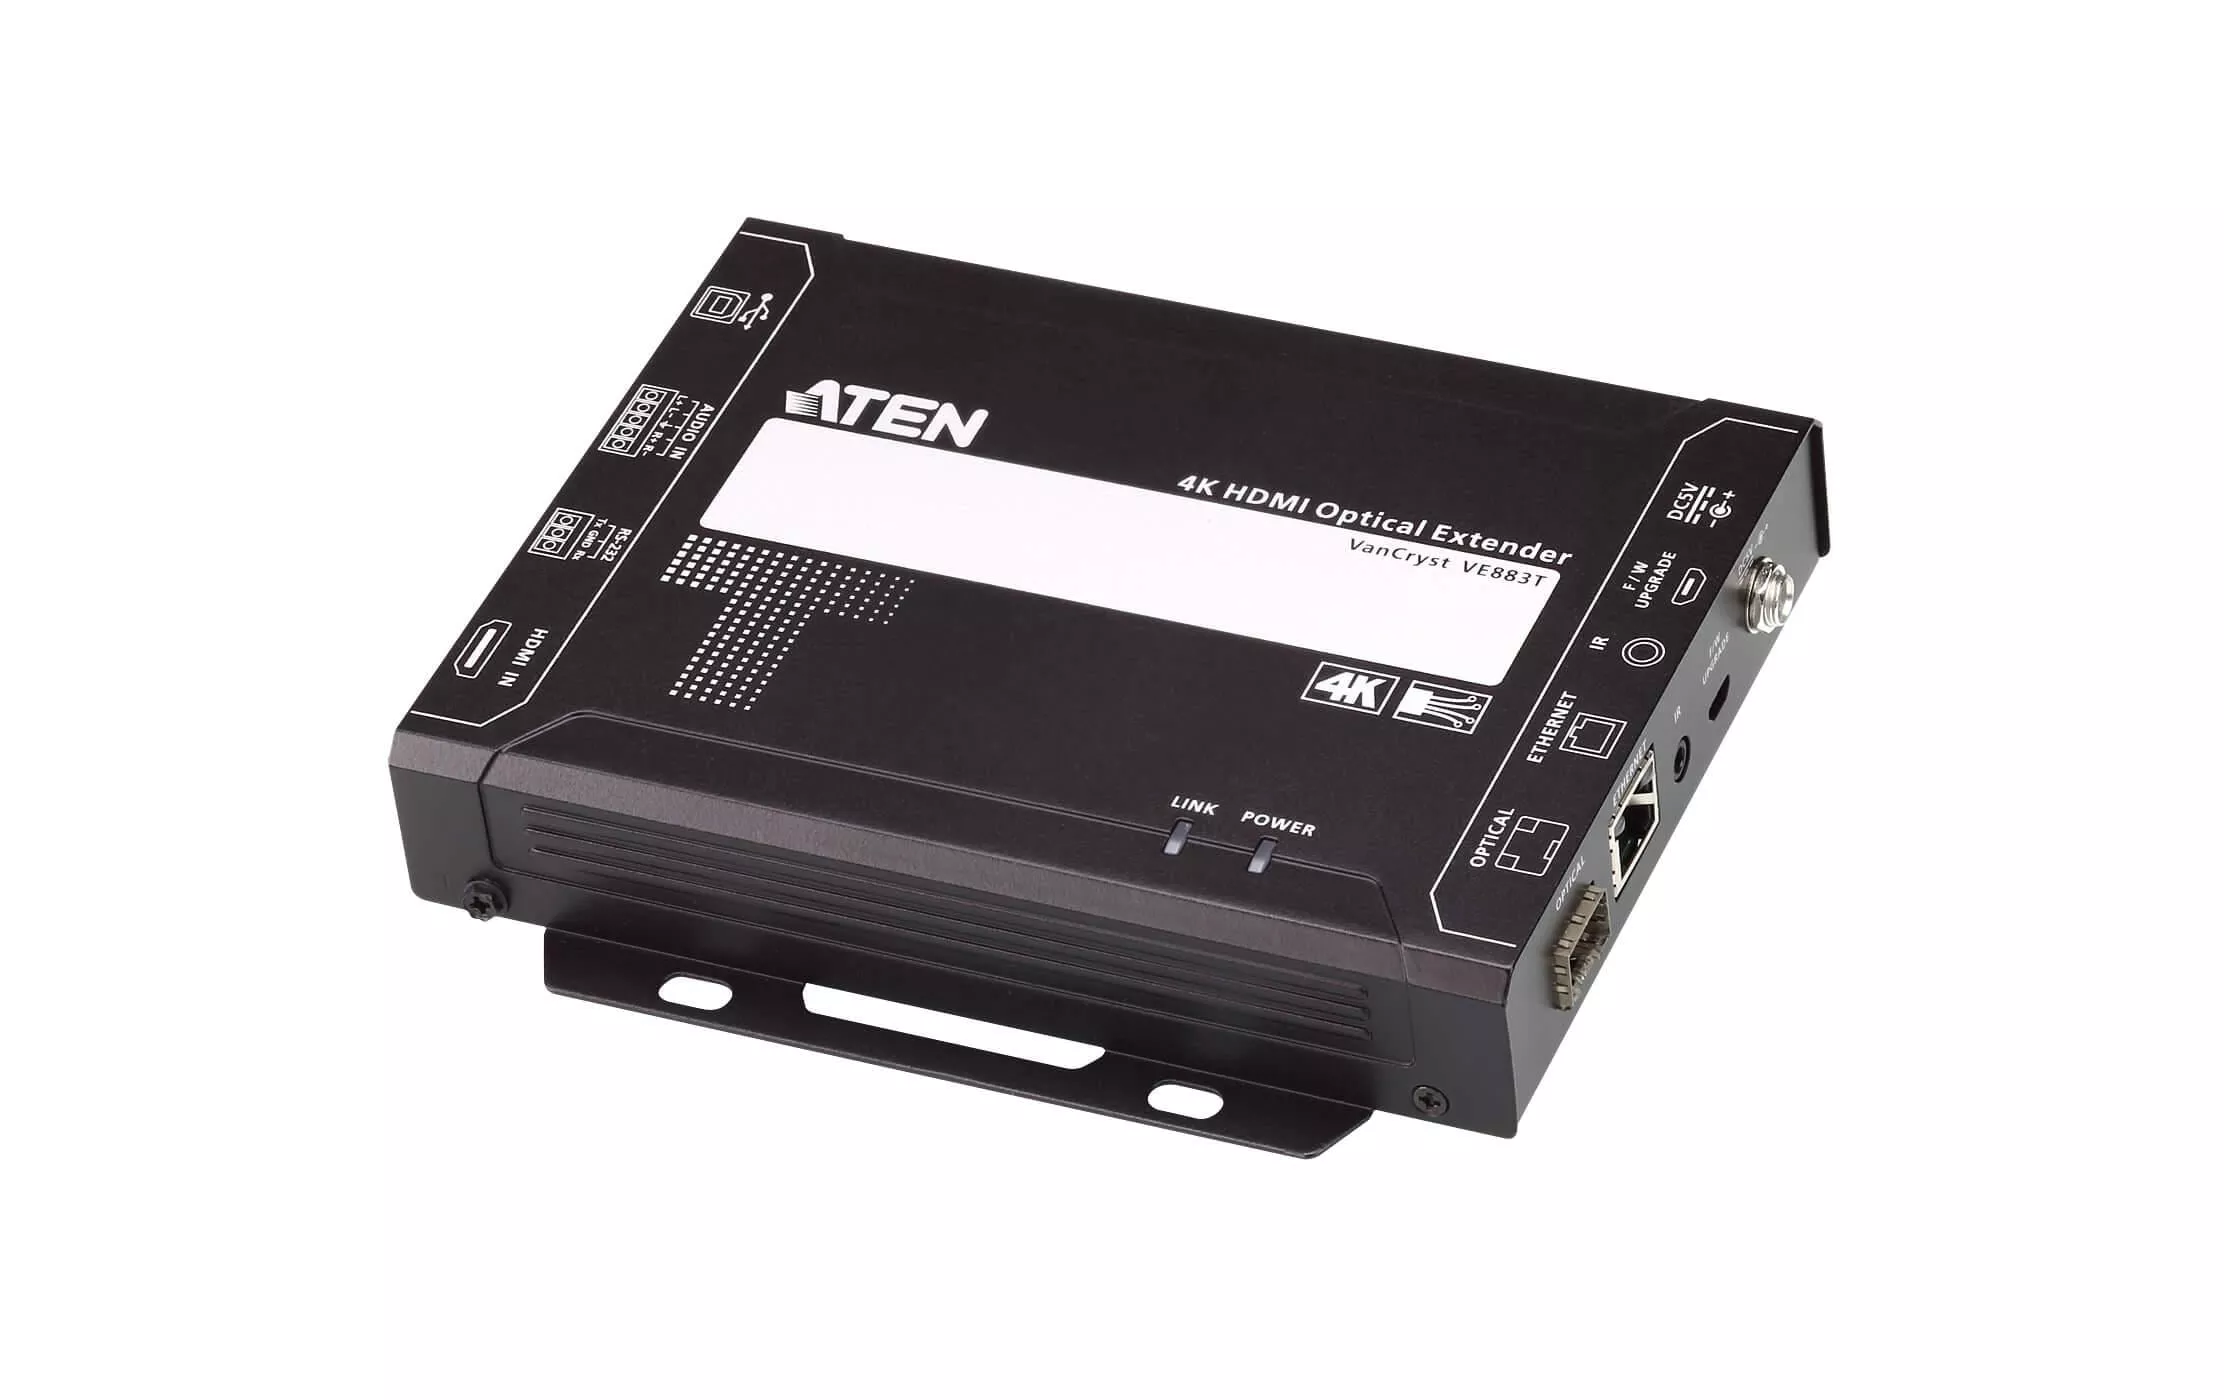 HDMI Extender 4K VE883TK1 Transmitter